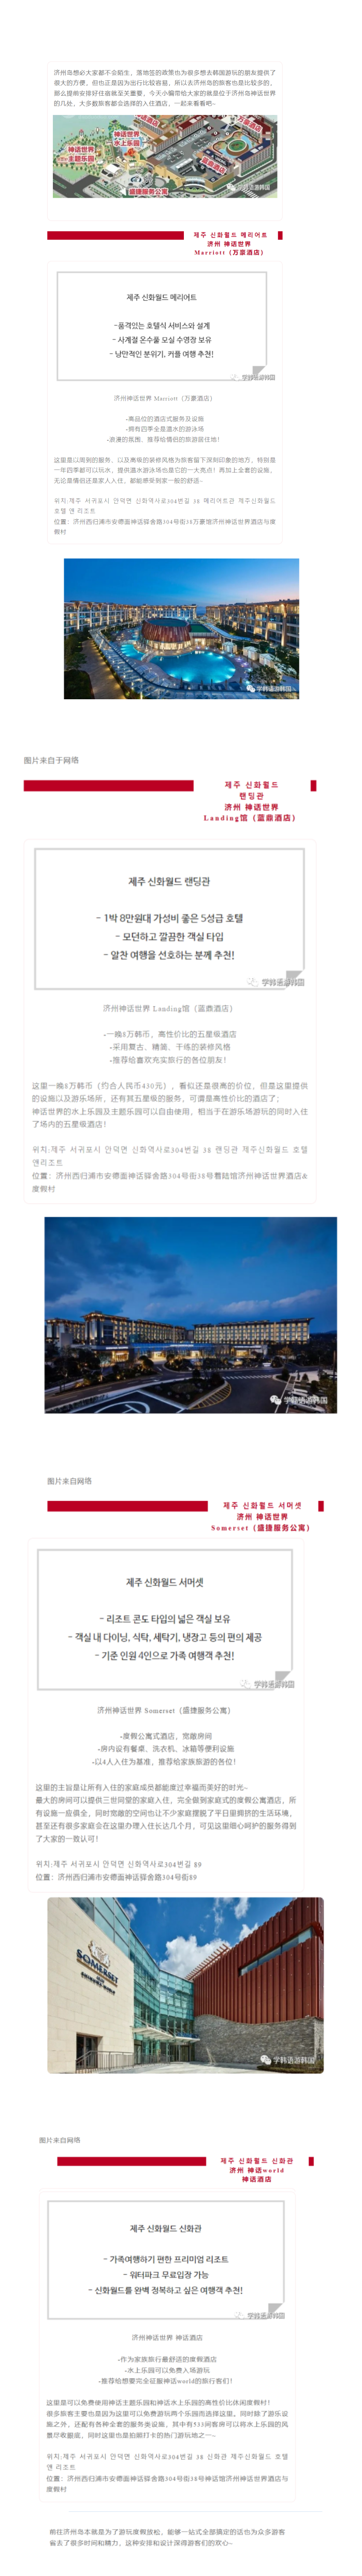 【游】济州岛一站式享受游玩休闲的好去处---神话世界四大酒店的各种特色